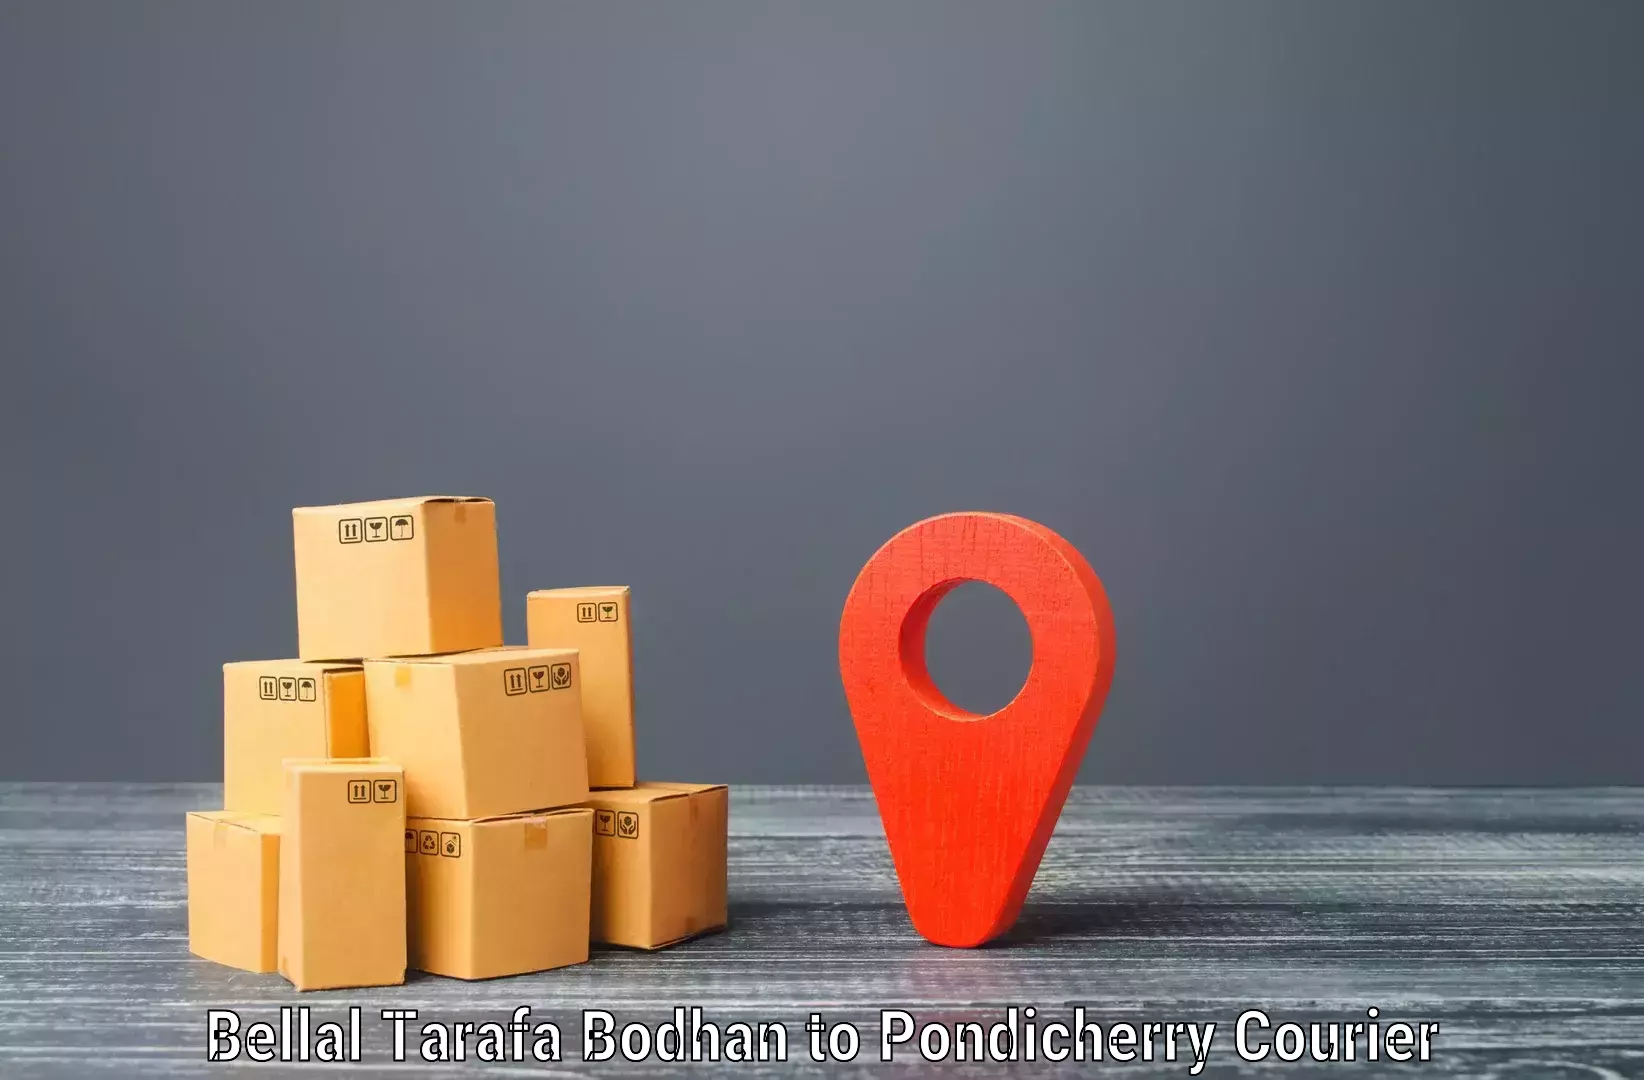 Advanced courier platforms Bellal Tarafa Bodhan to NIT Puducherry